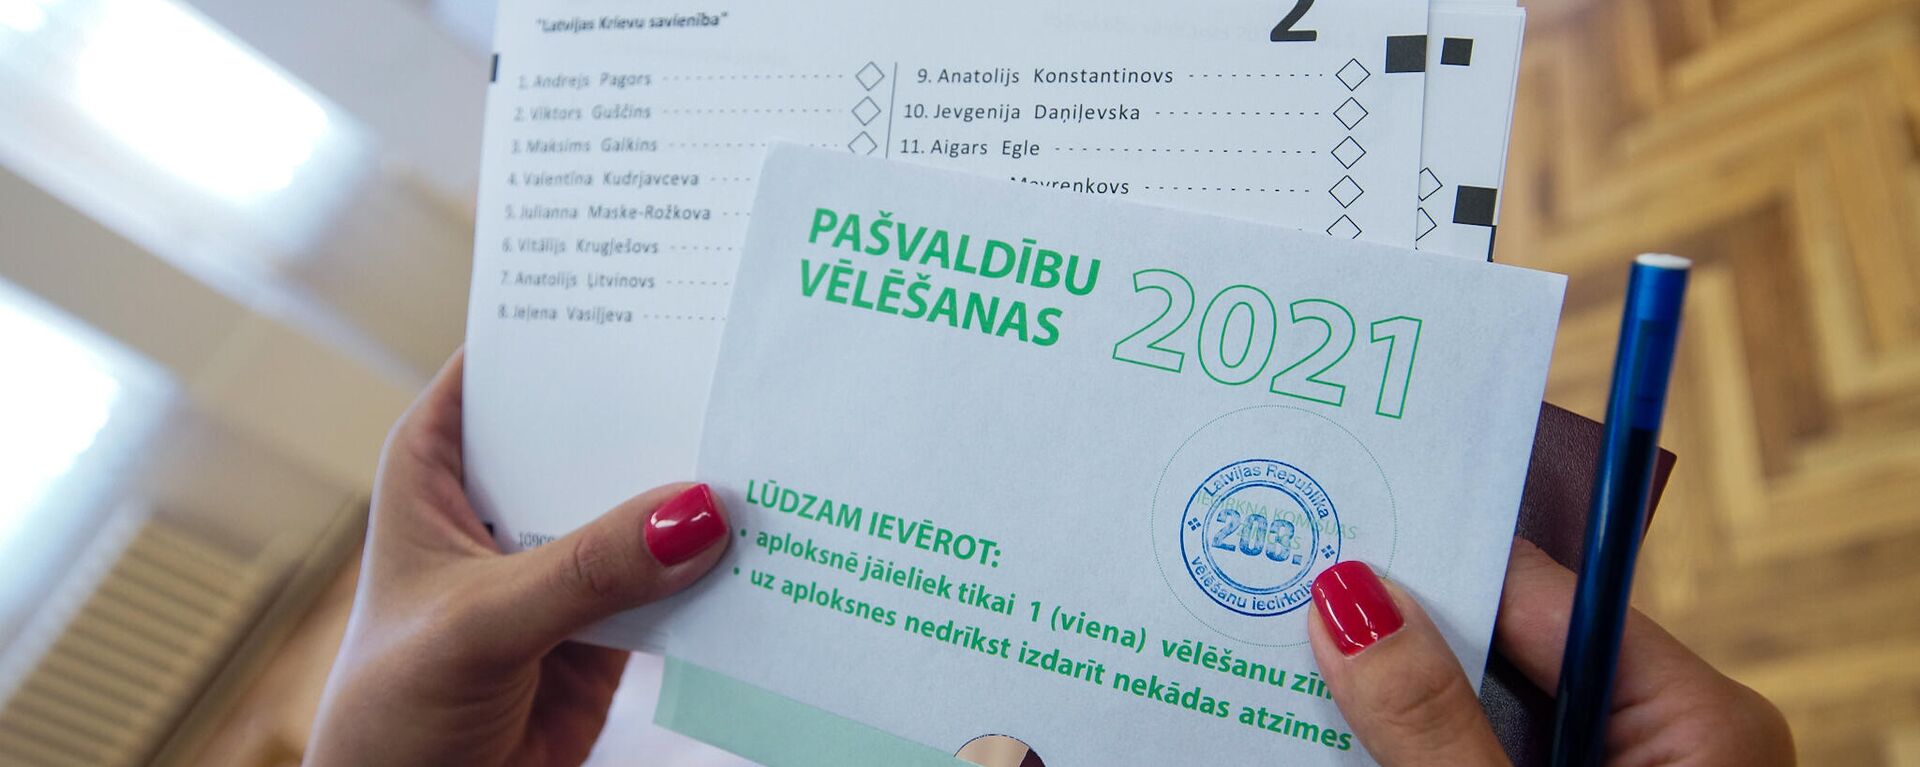 Муниципальные выборы 2021 в Латвии - Sputnik Латвия, 1920, 05.06.2021